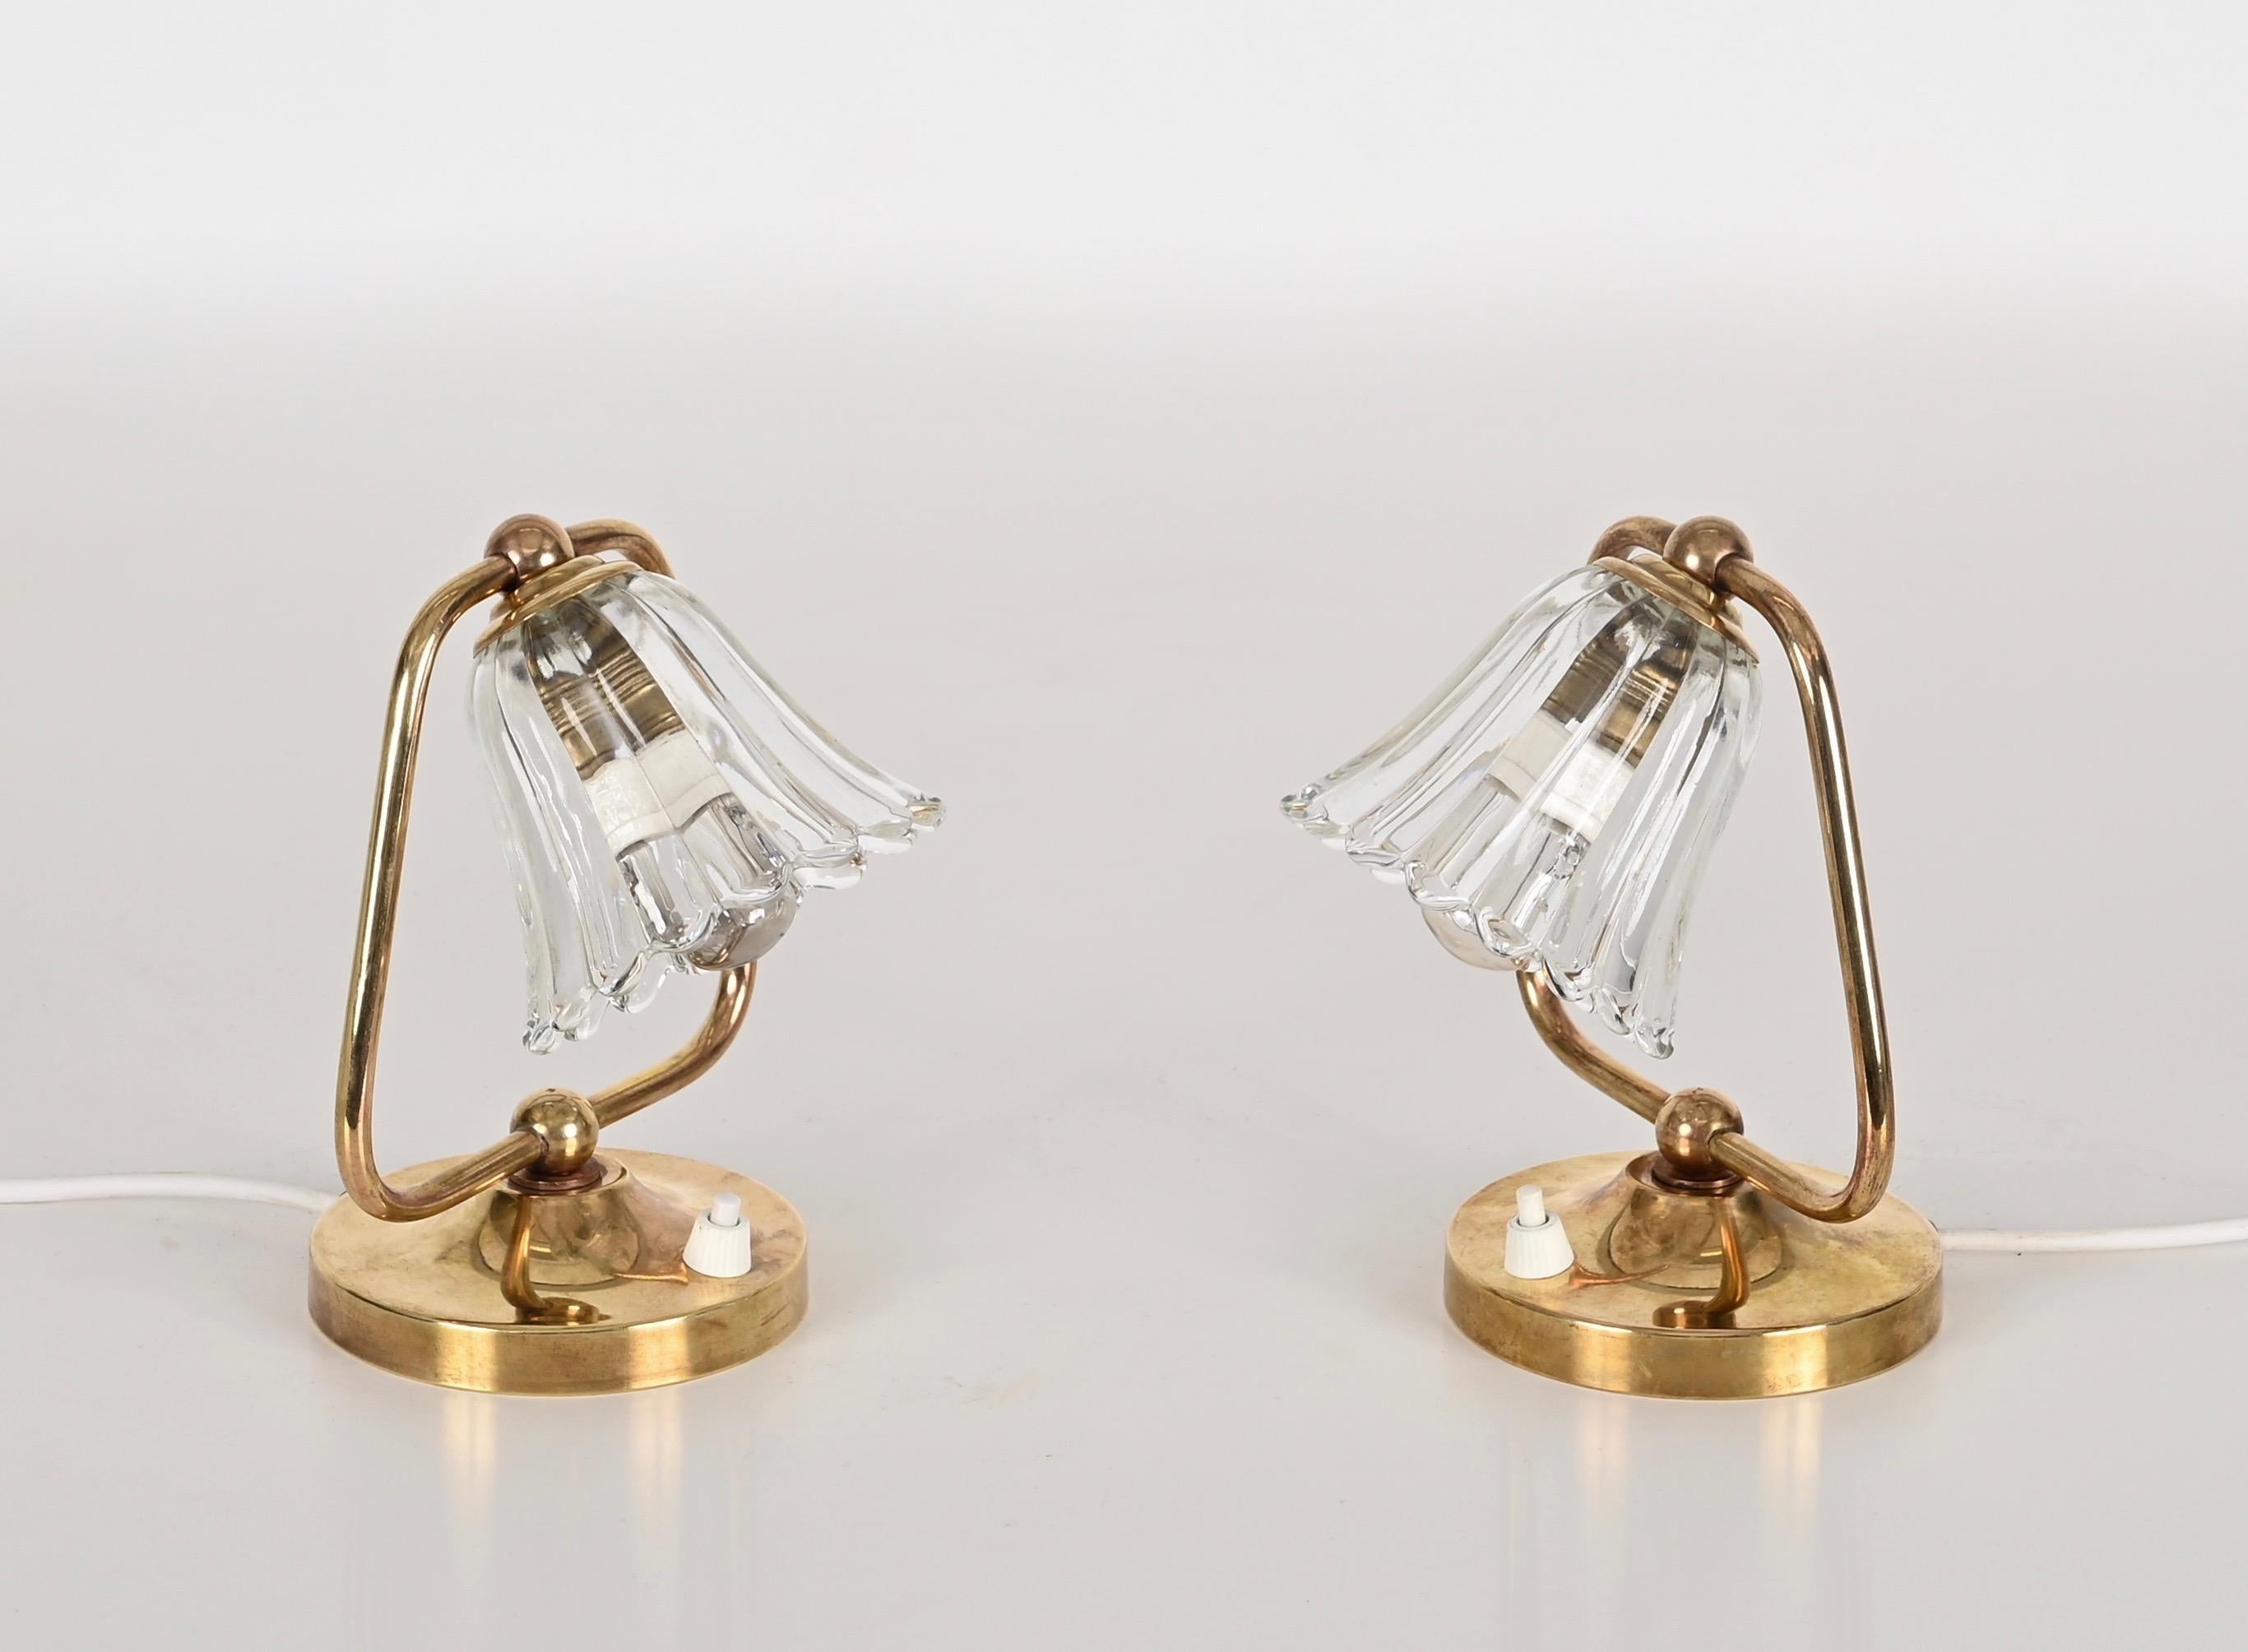 Superbes lampes de table en forme de cloche en verre de Murano et en laiton massif. Ces lampes de table romantiques ont été fabriquées dans les années 40 en Italie par le maître verrier de Murano, Ercol. 

Ces lampes finement travaillées rappellent